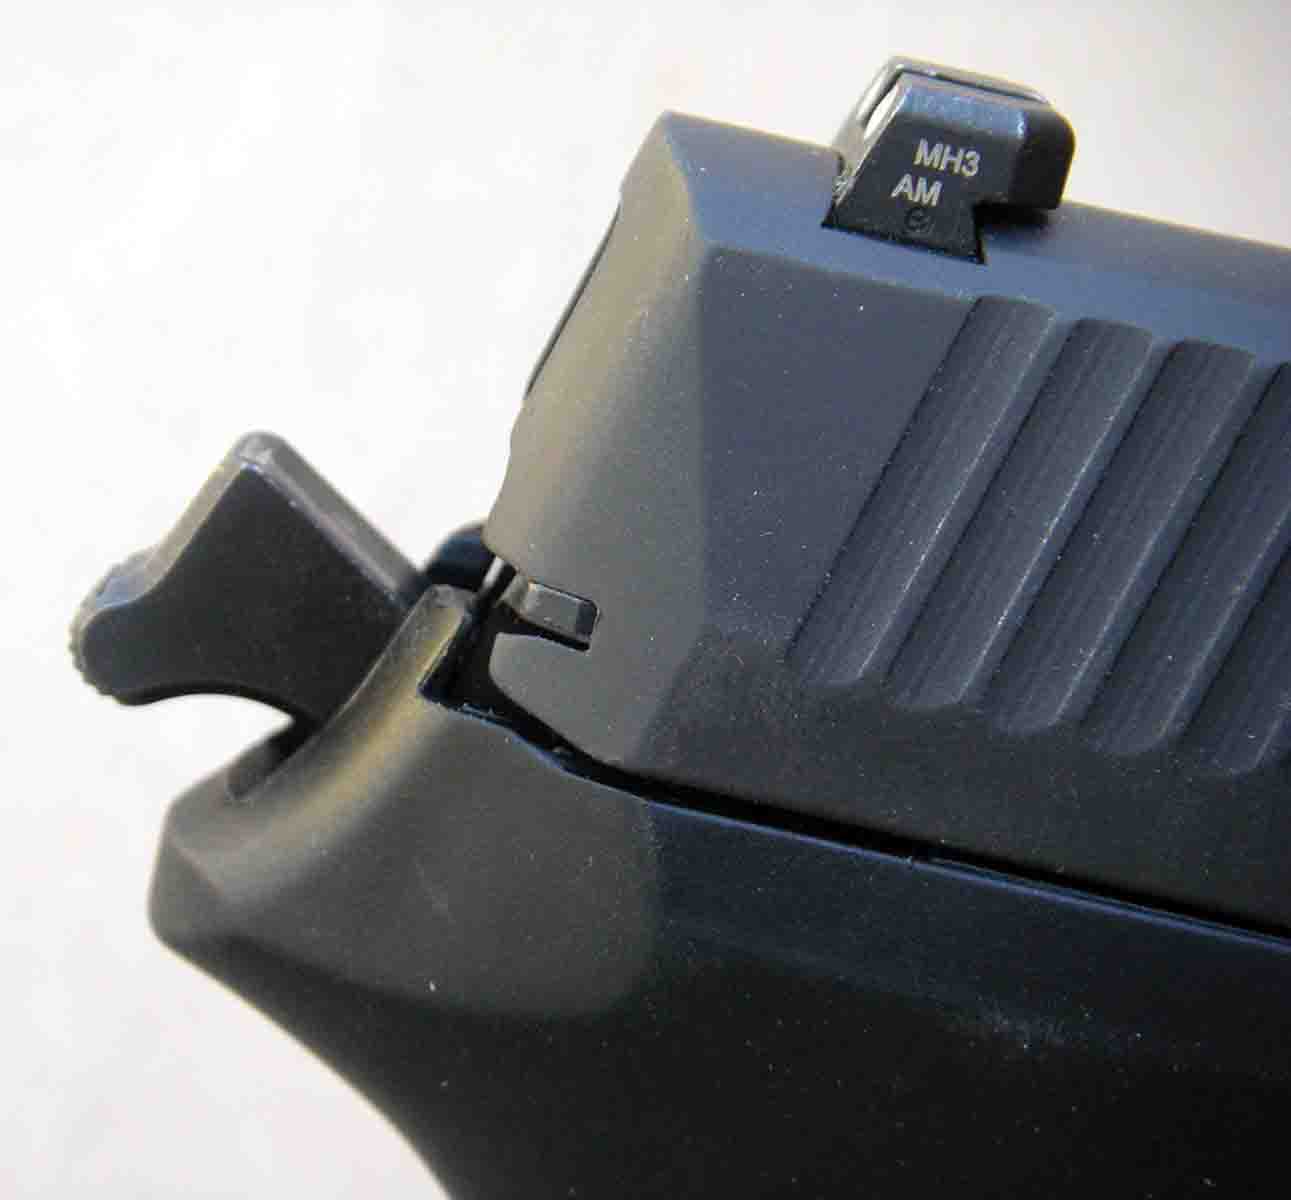 The pistol features an external hammer.